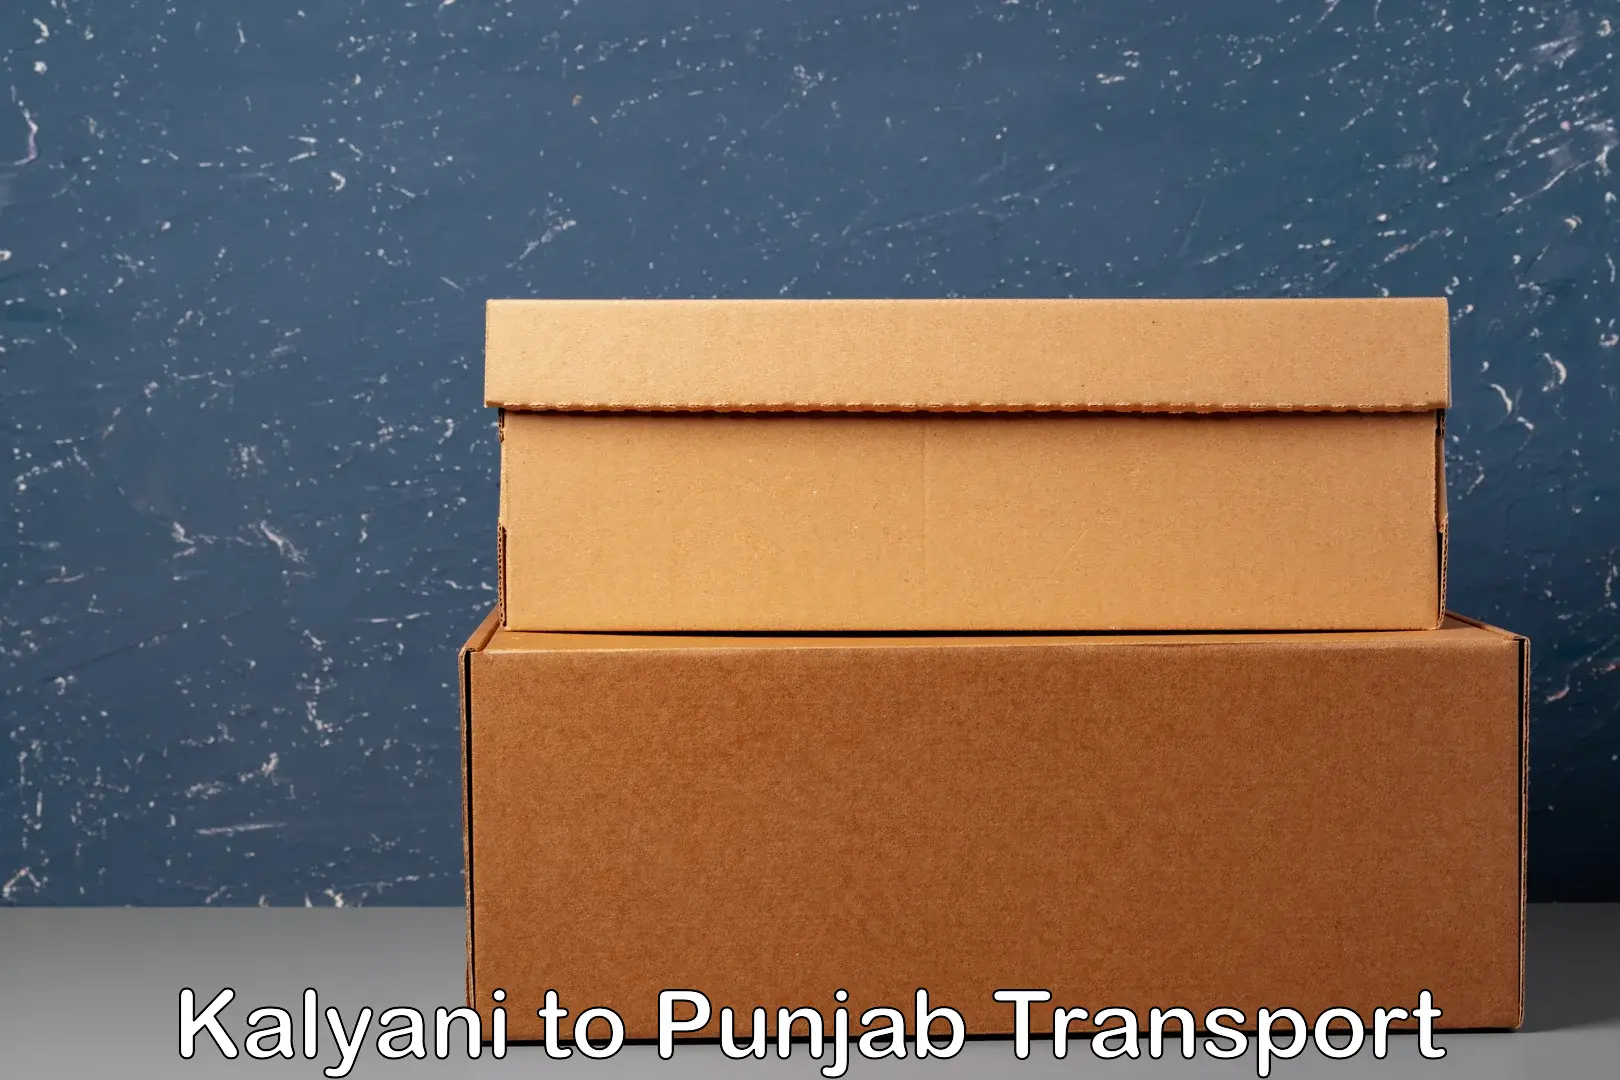 Express transport services Kalyani to Punjab